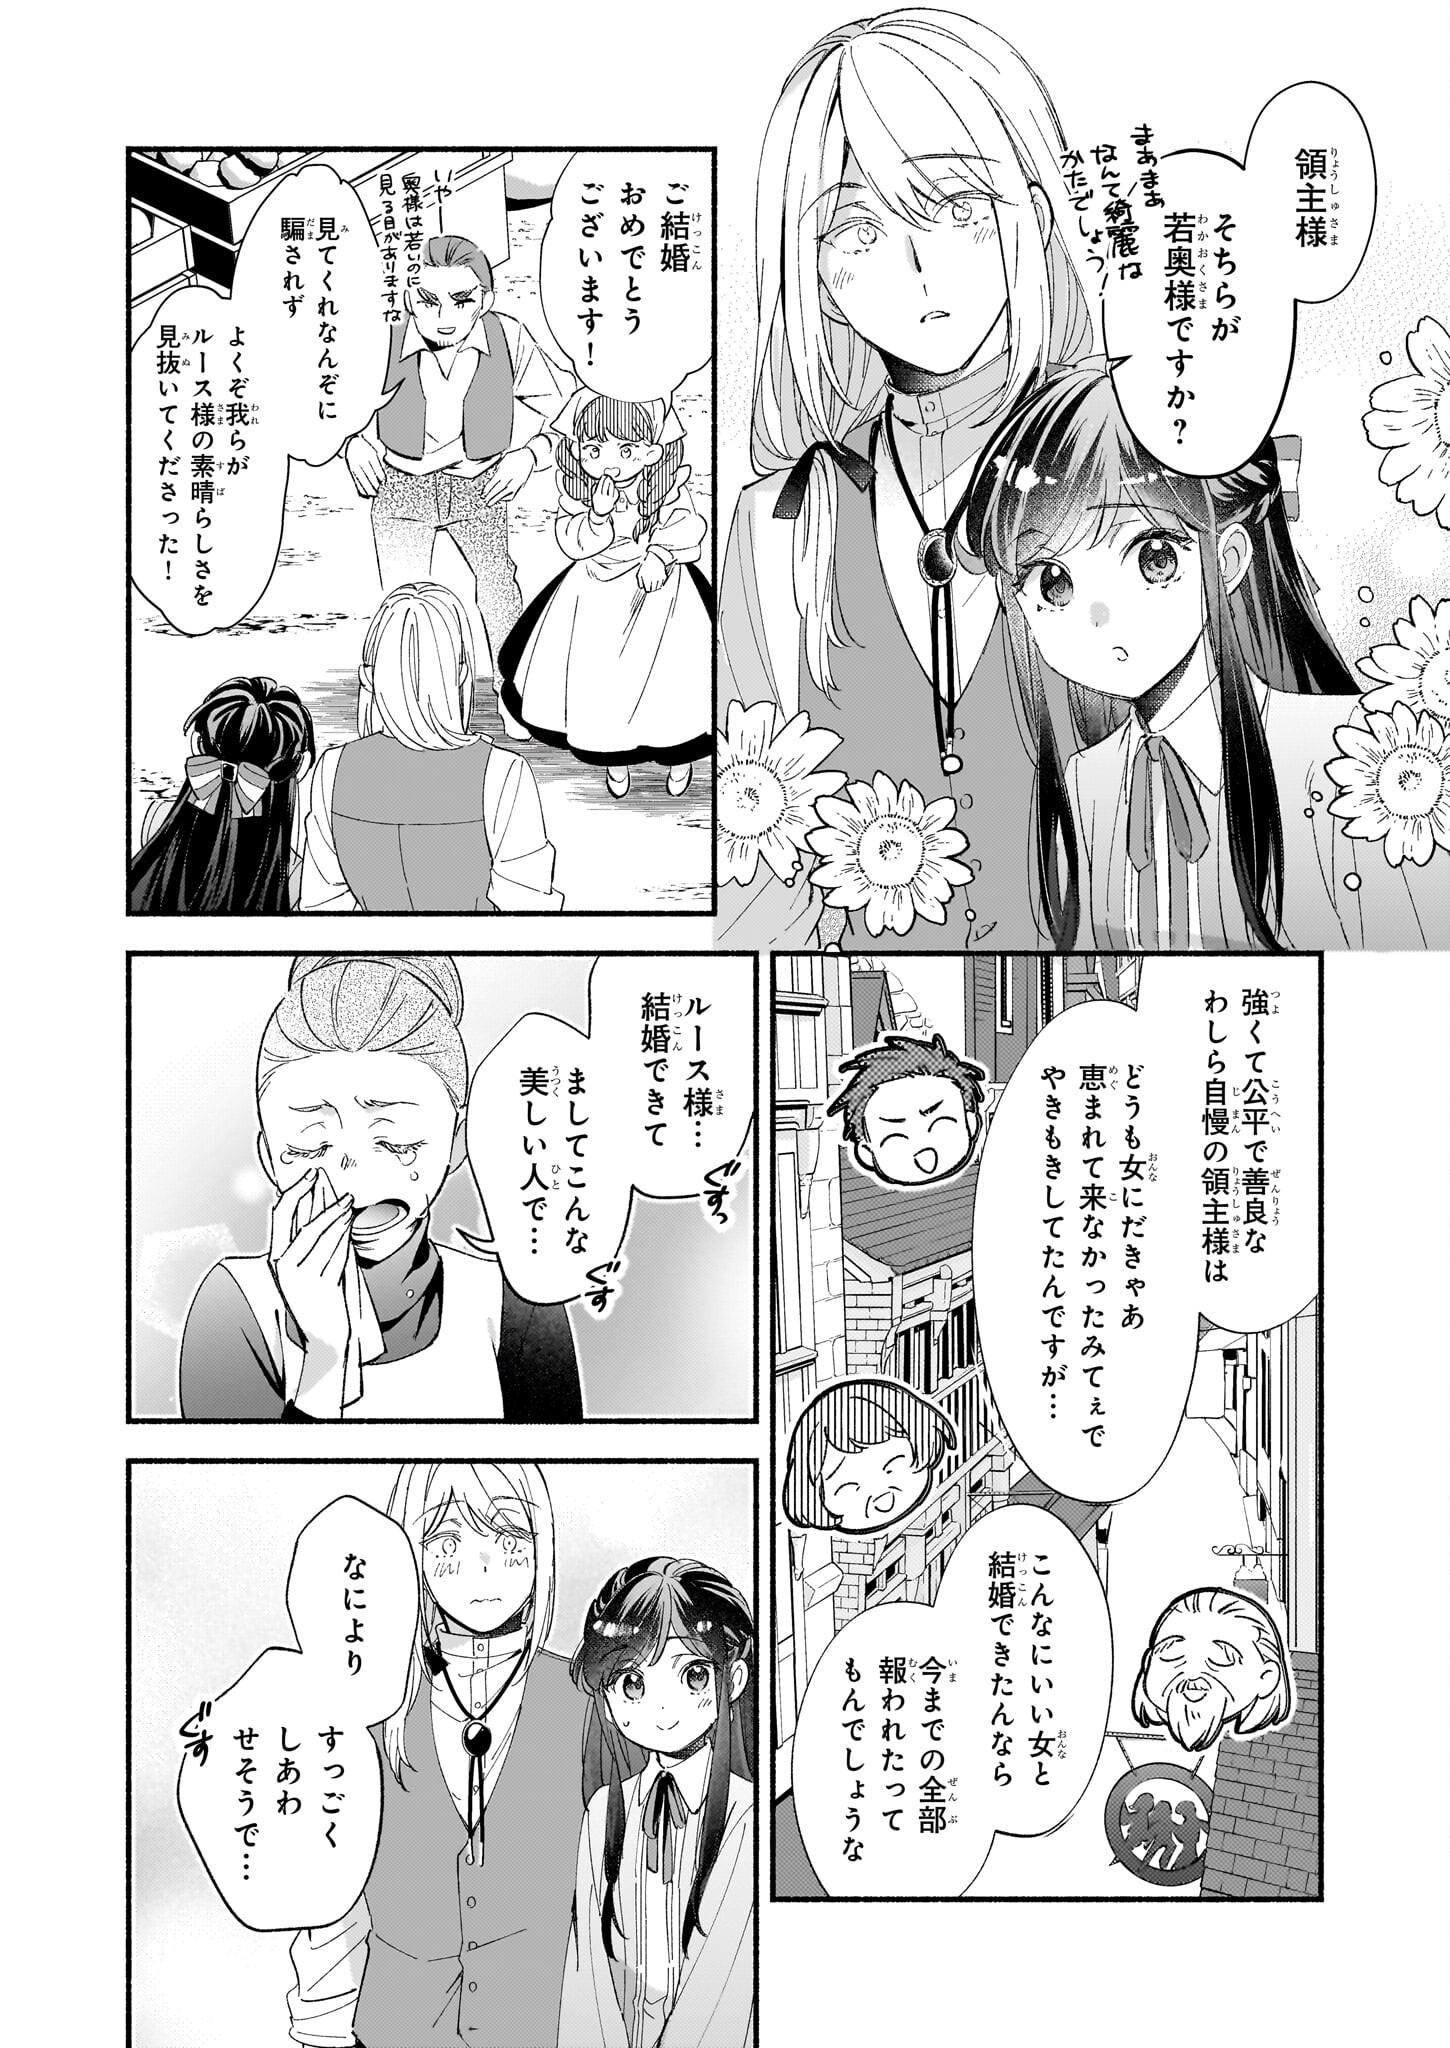 Suitei Akuyaku Reijou wa Koku Ichiban no Busaiku ni Totsugasareru you desu - Chapter 10 - Page 2